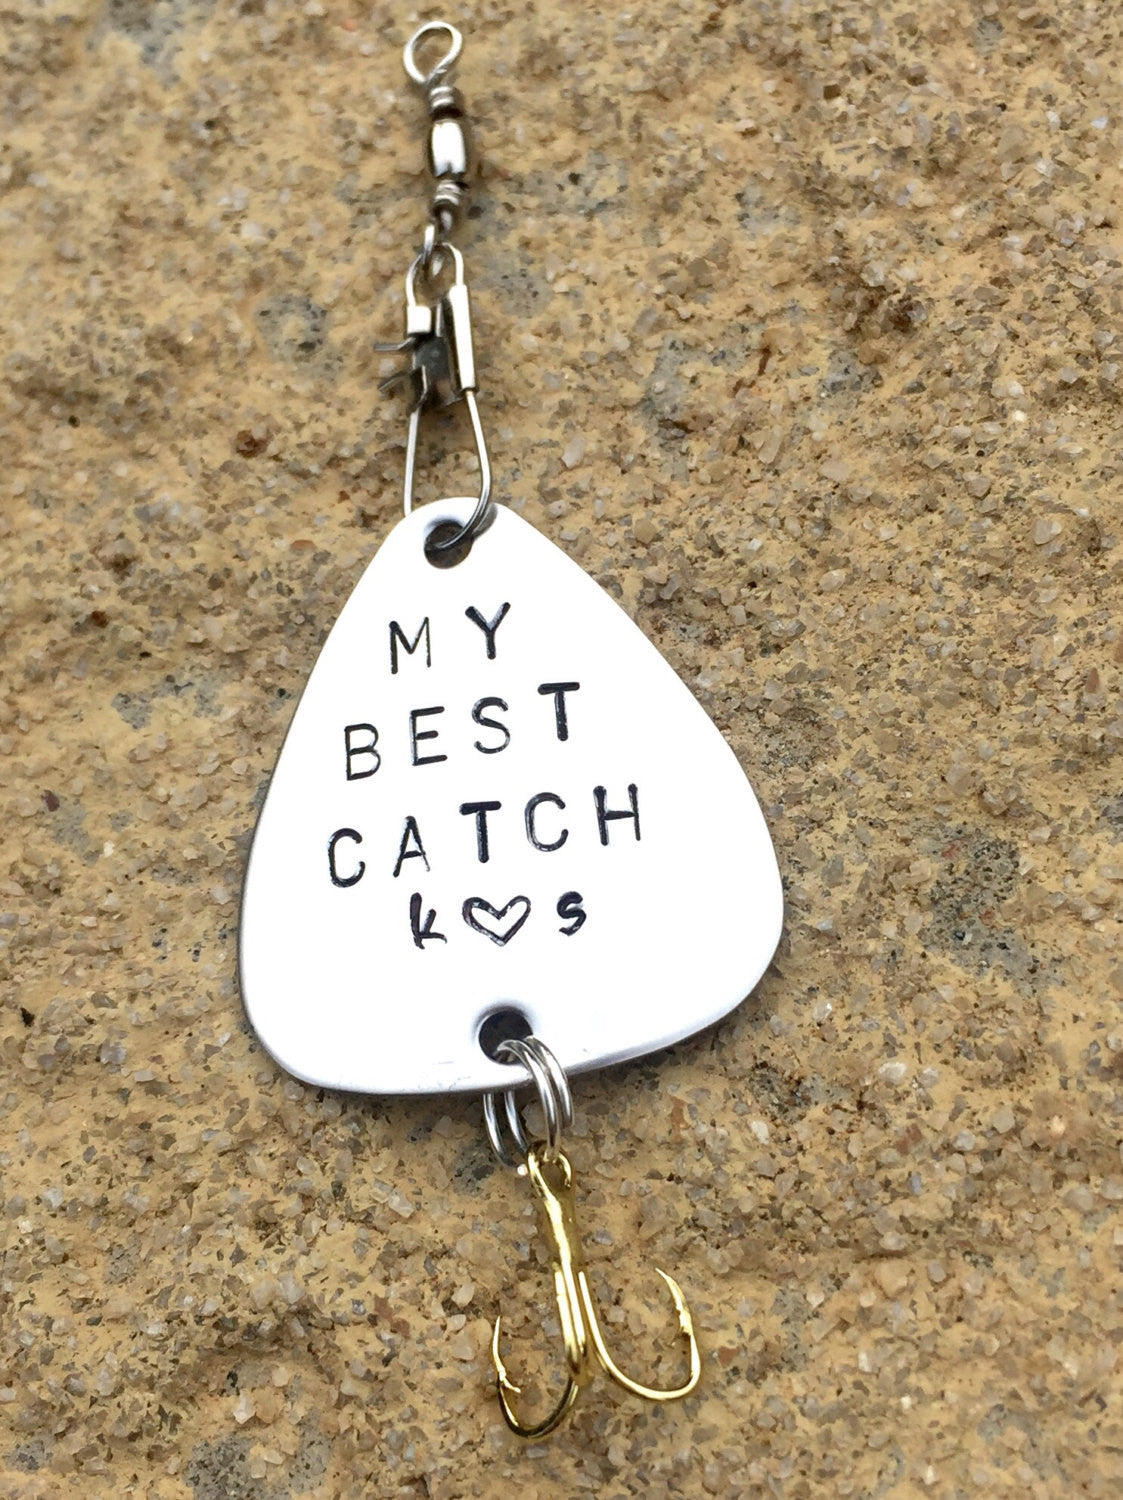 Personalized Fishing Lure, Fishing Lures - Natashaaloha, jewelry, bracelets, necklace, keychains, fishing lures, gifts for men, charms, personalized, 